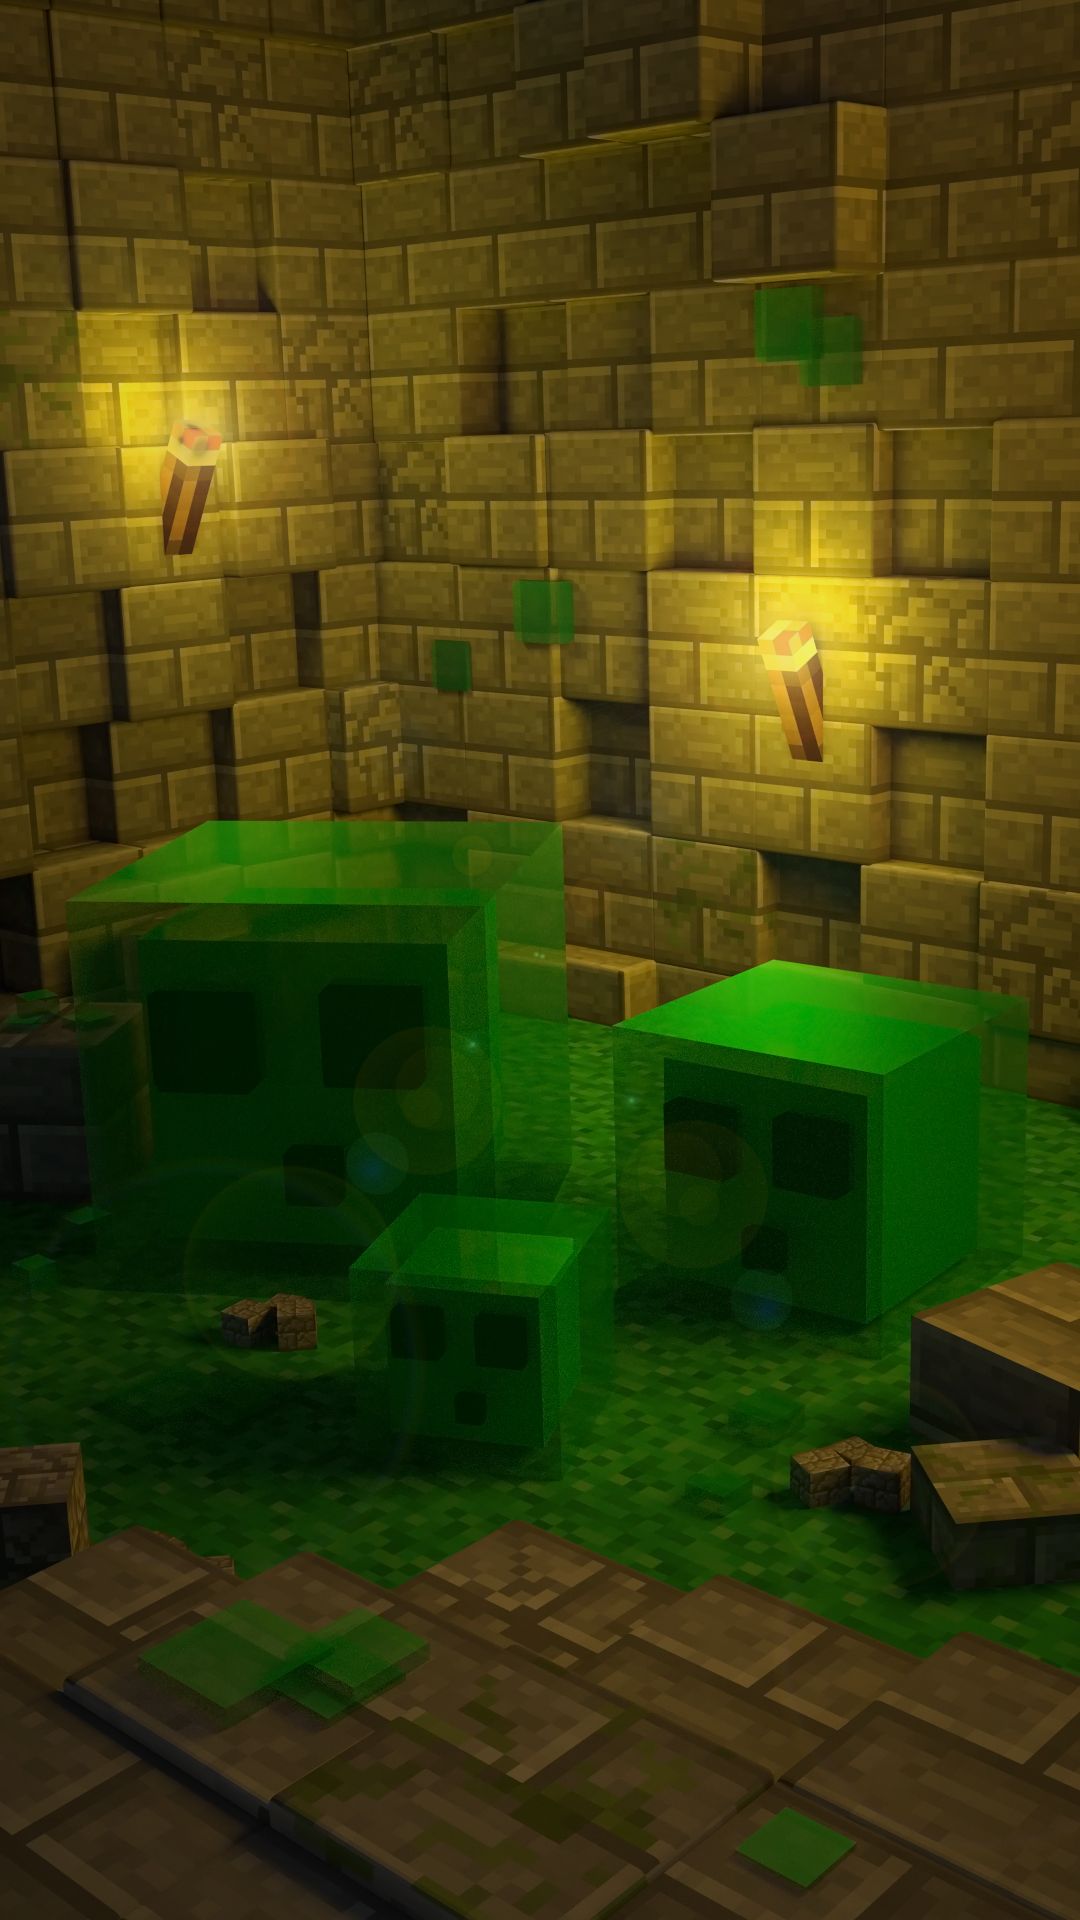 slime (minecraft), video game, minecraft, blender